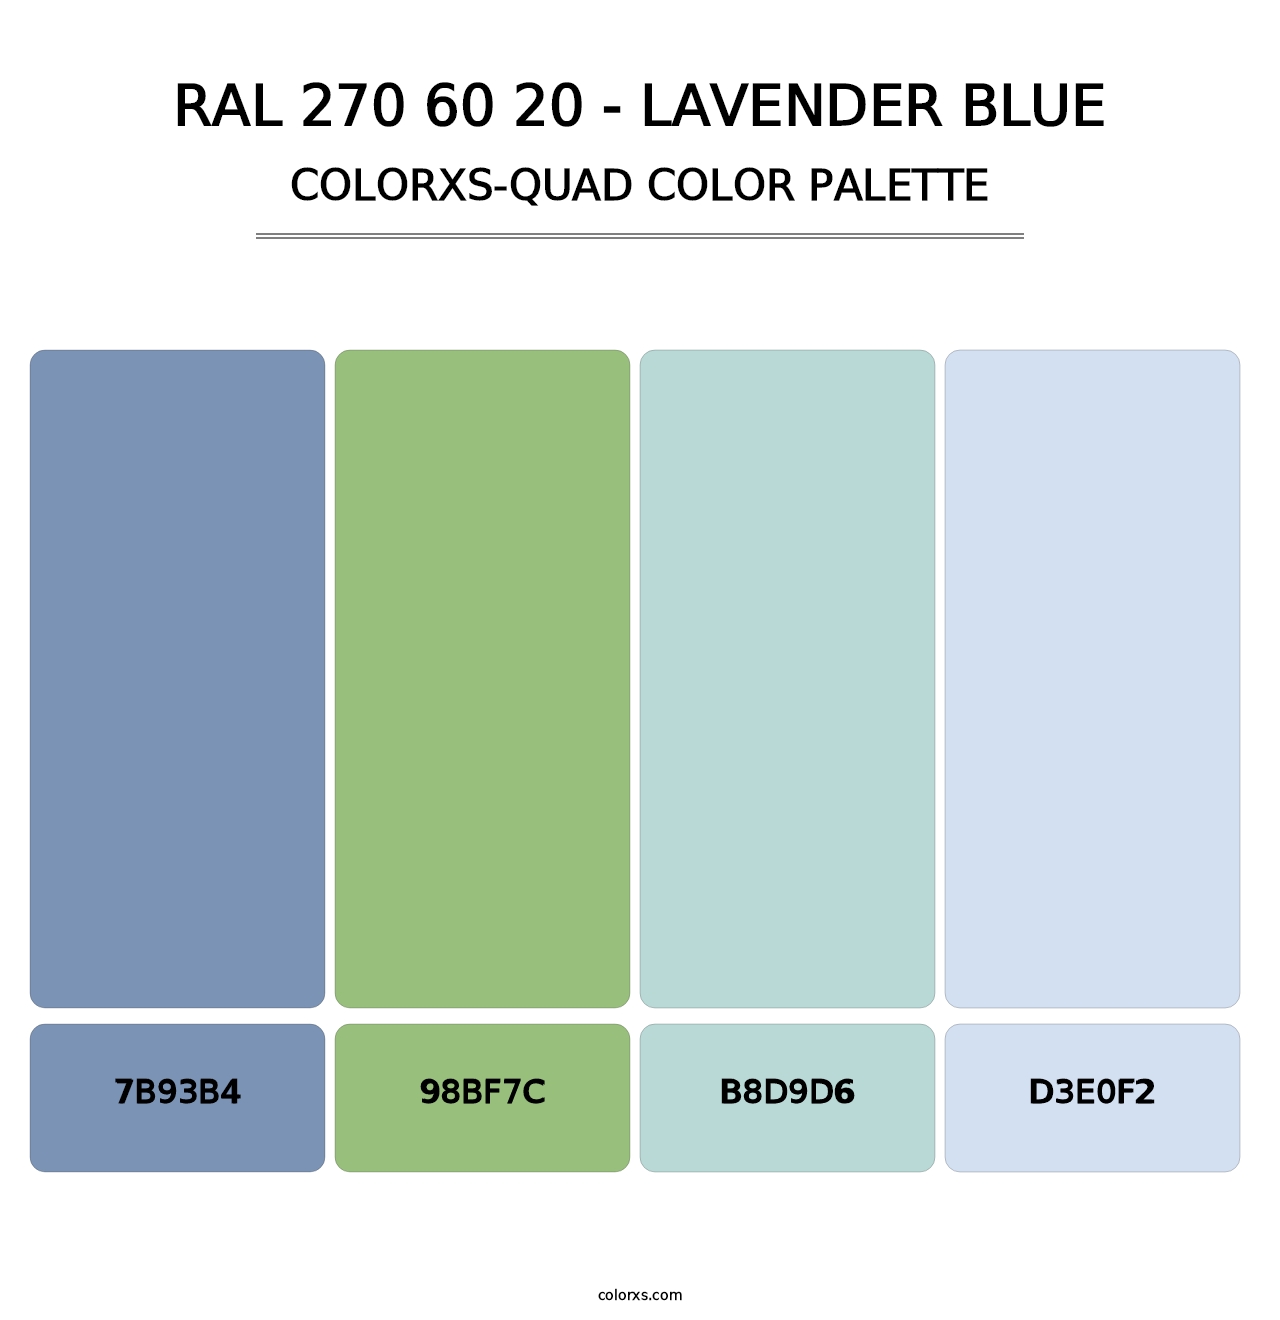 RAL 270 60 20 - Lavender Blue - Colorxs Quad Palette